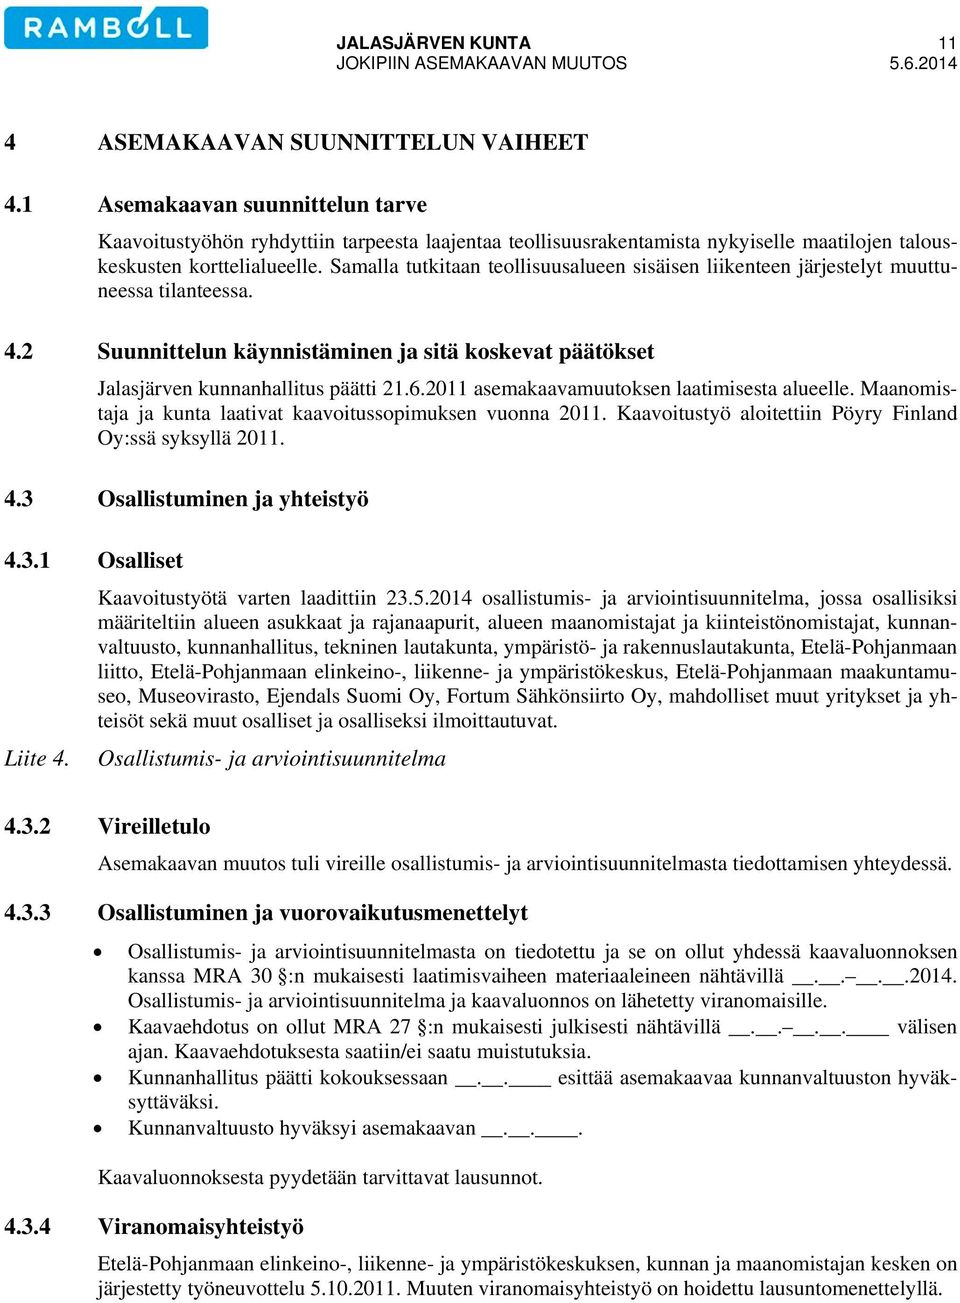 Samalla tutkitaan teollisuusalueen sisäisen liikenteen järjestelyt muuttuneessa tilanteessa. 4.2 Suunnittelun käynnistäminen ja sitä koskevat päätökset Jalasjärven kunnanhallitus päätti 21.6.